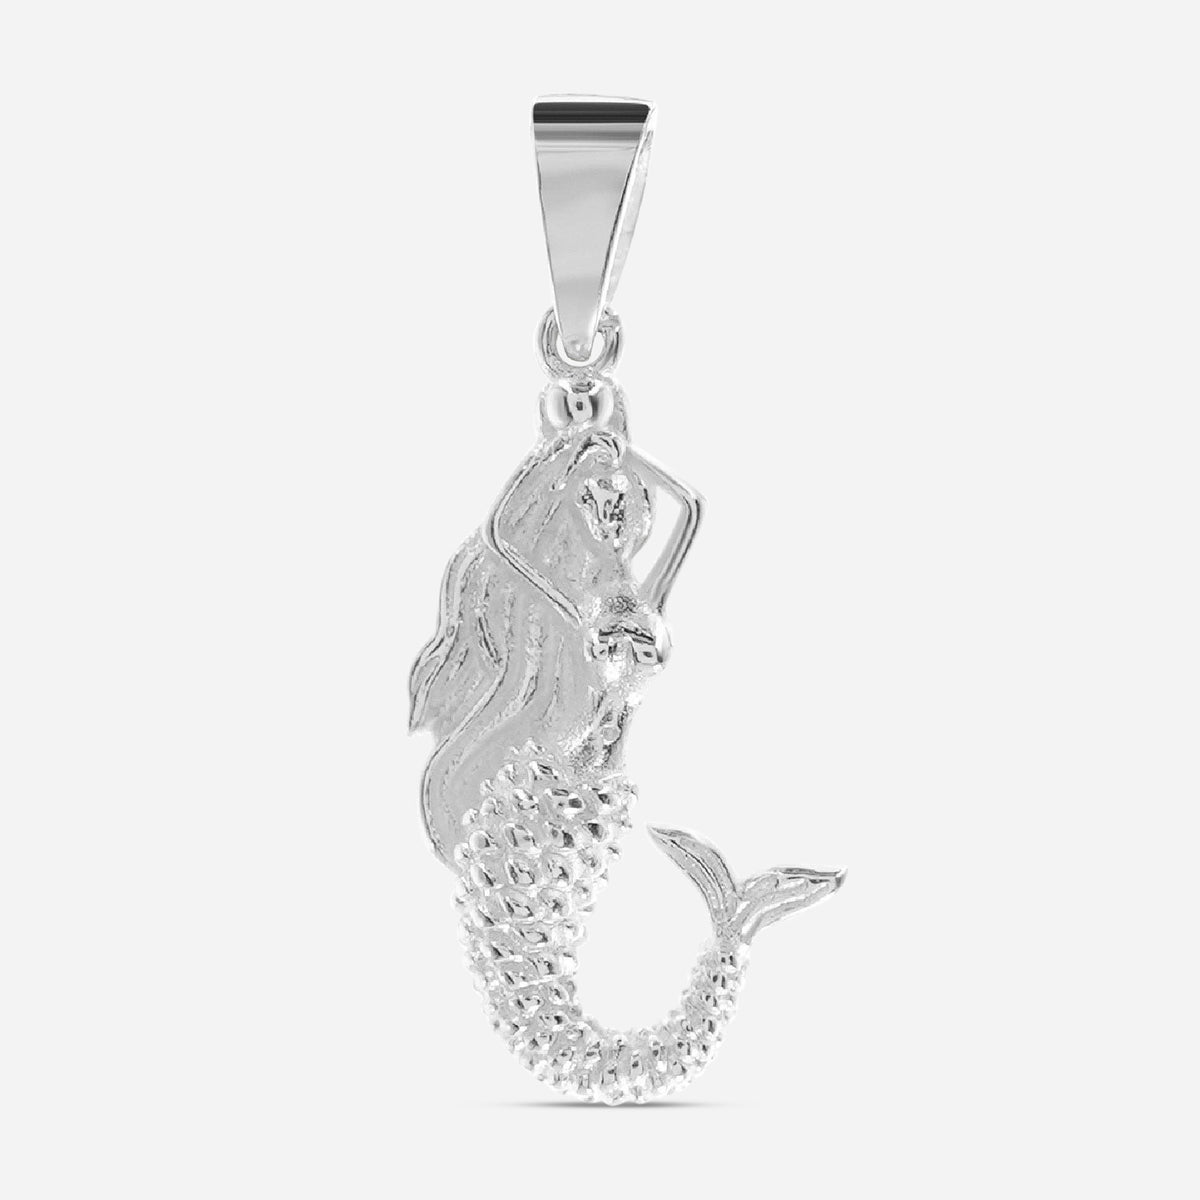 Mermaid - silver